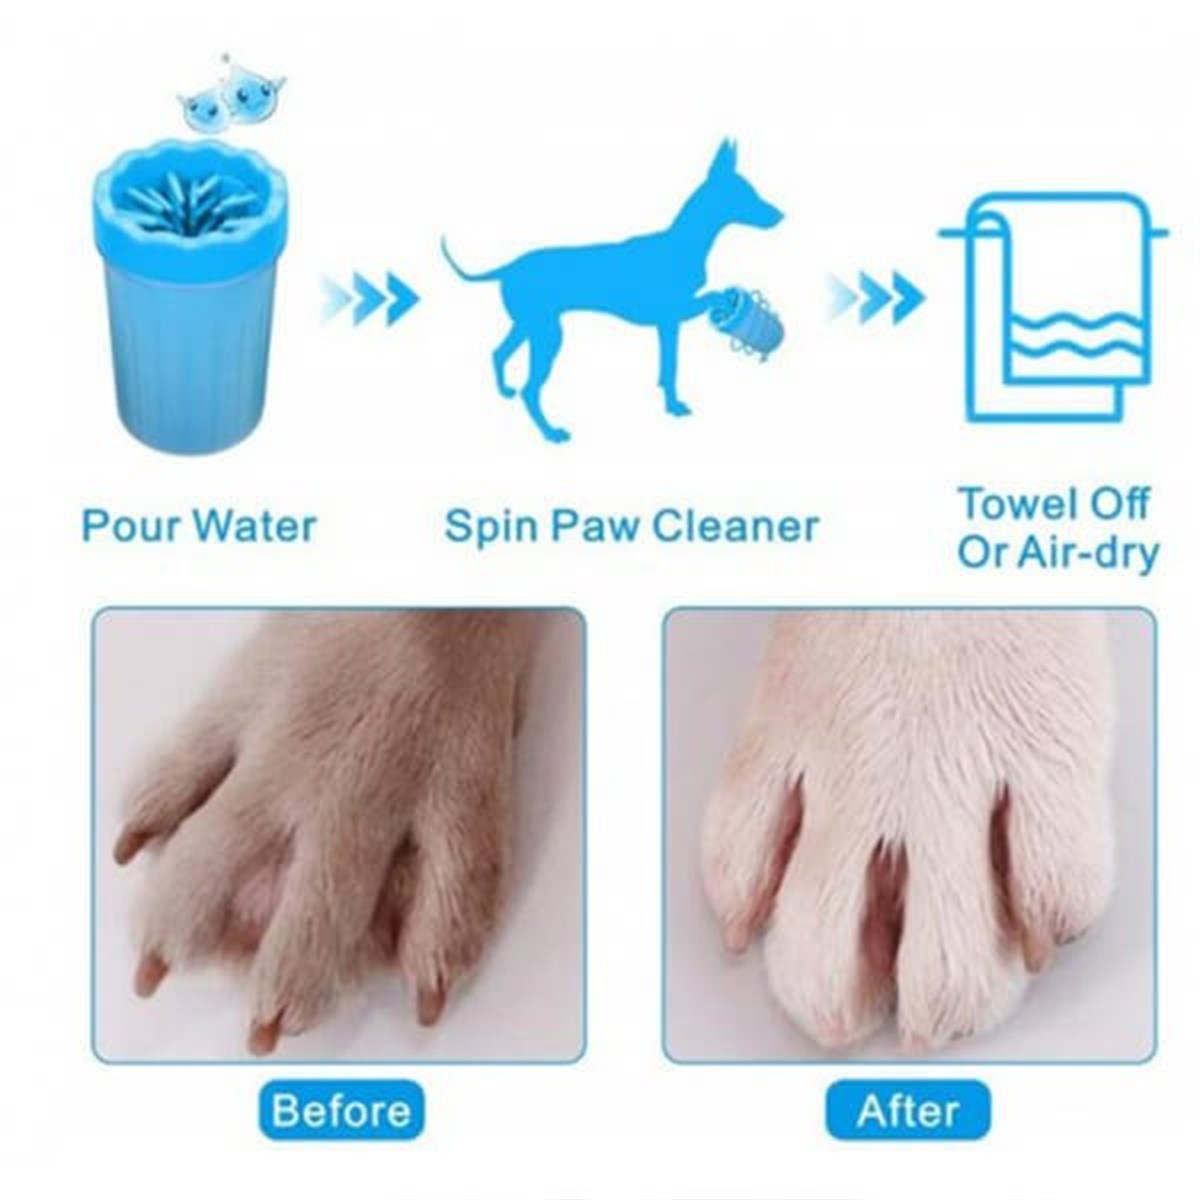 Pet Animal Köpek Pati Temizleme Aparatı Küçük Boy 8.5x11h Cm, Alışverişin  Adresi'nde | Shopiglo